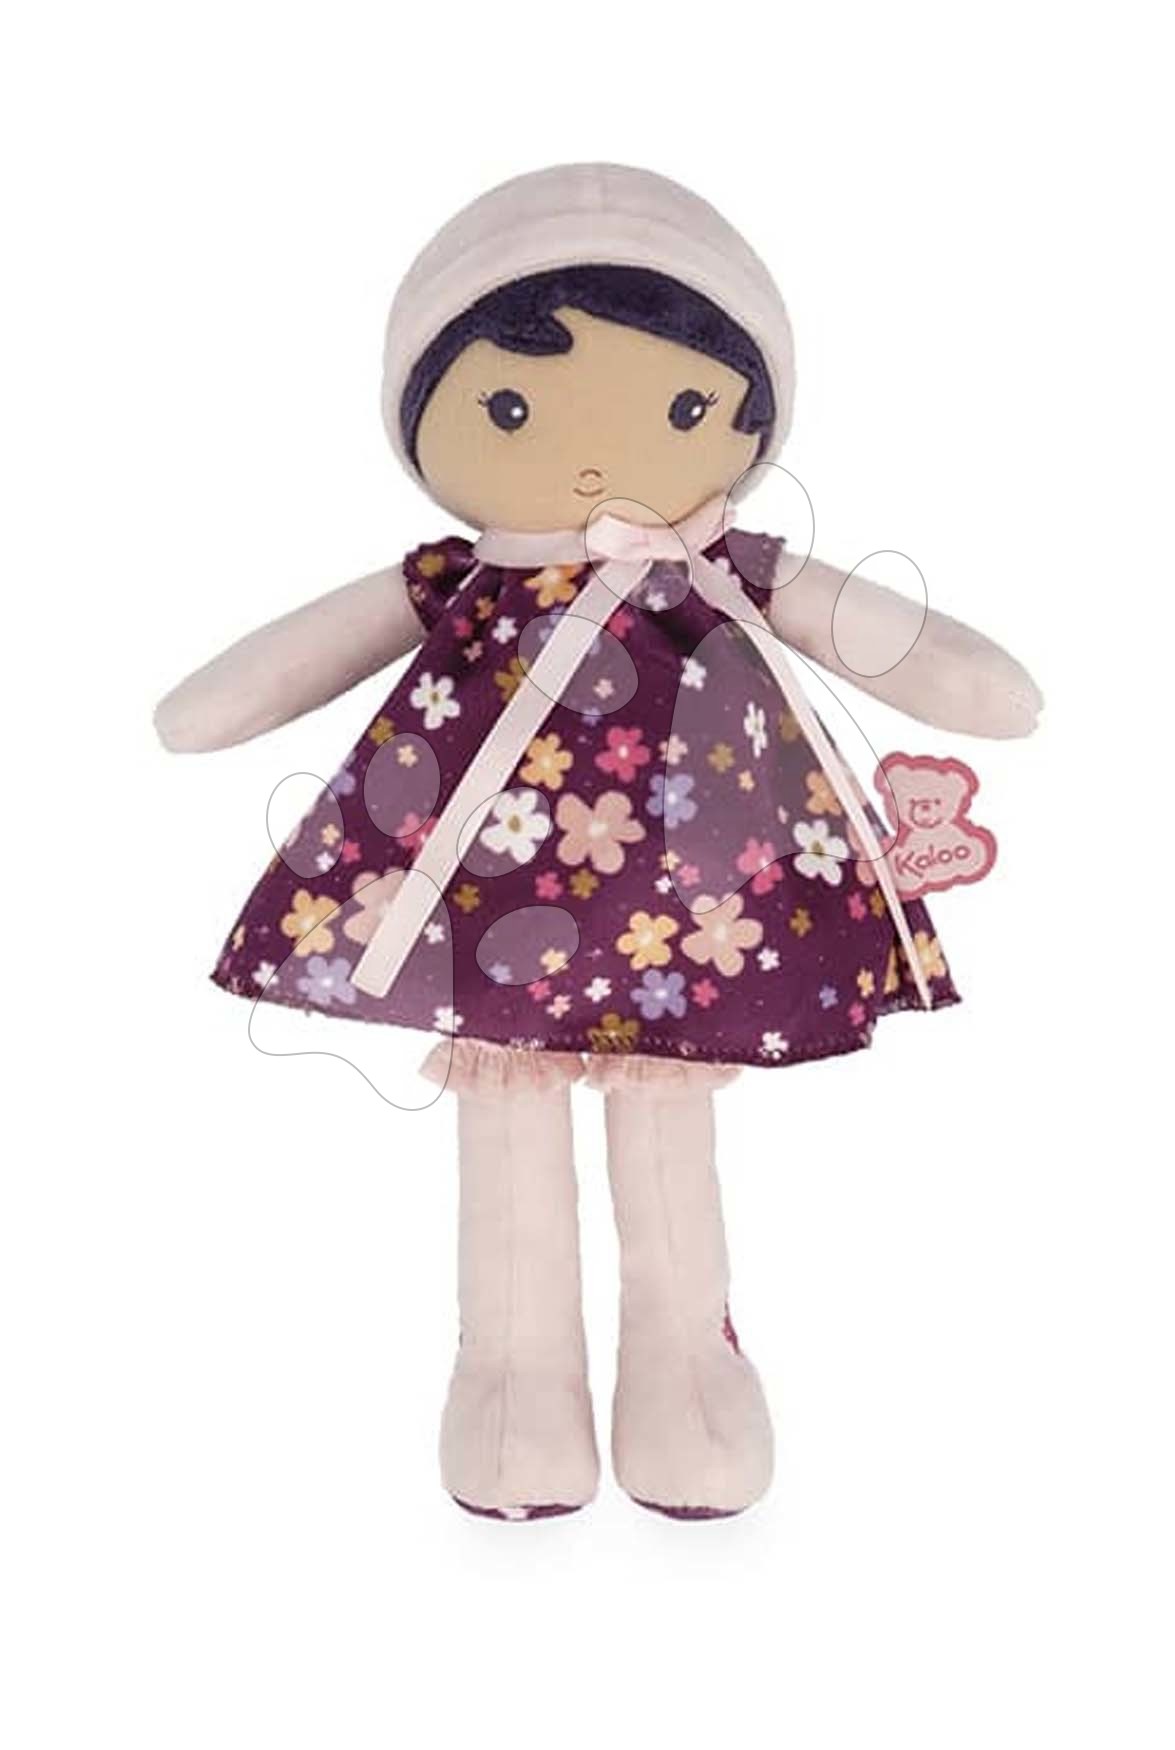 Panenka pro miminka Violette Doll Tendresse Kaloo 25 cm ve fialových šatech z jemného textilu od 0 měsíců